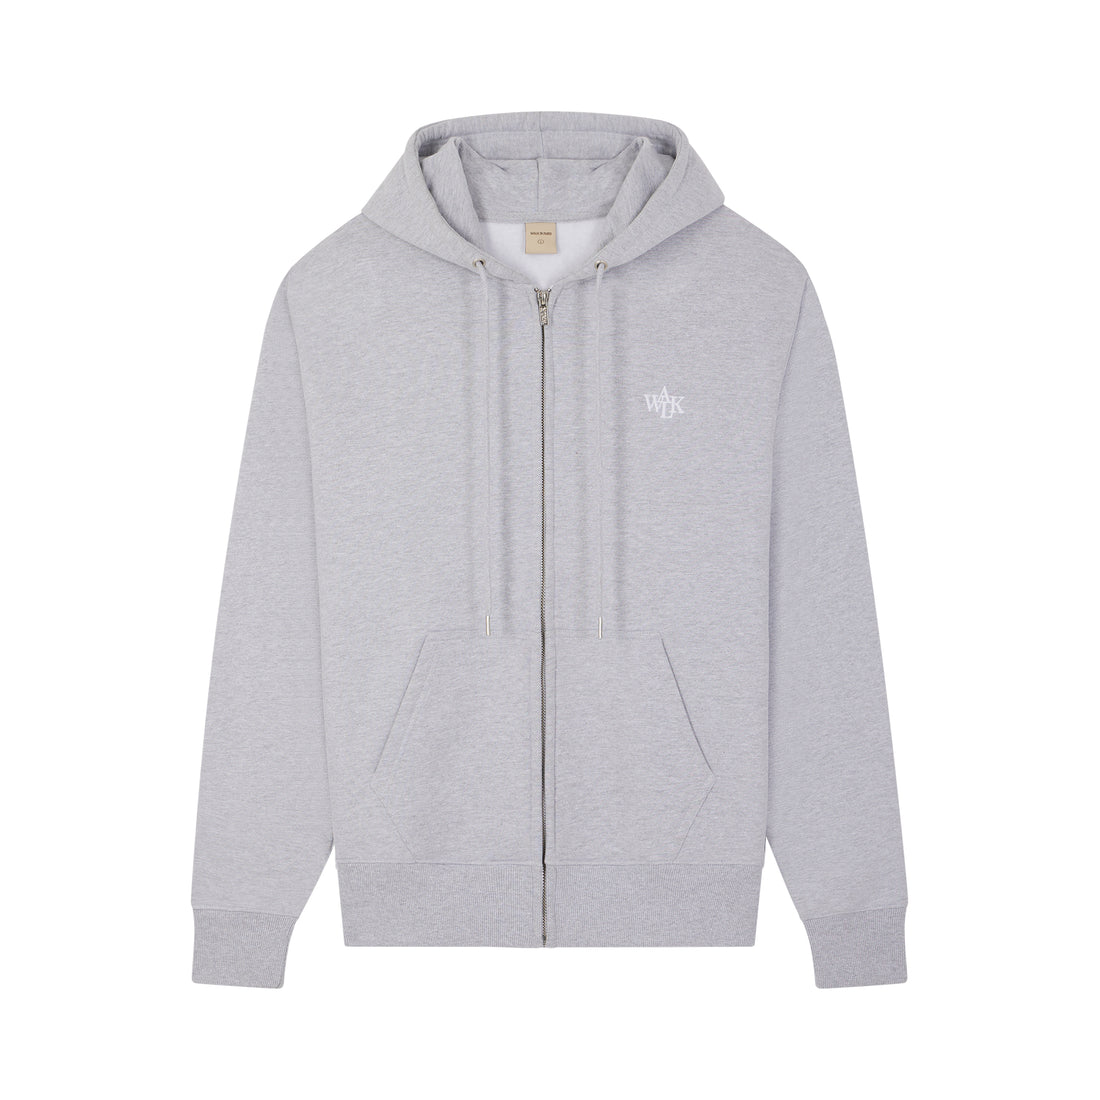 Le hoodie zippé gris chiné